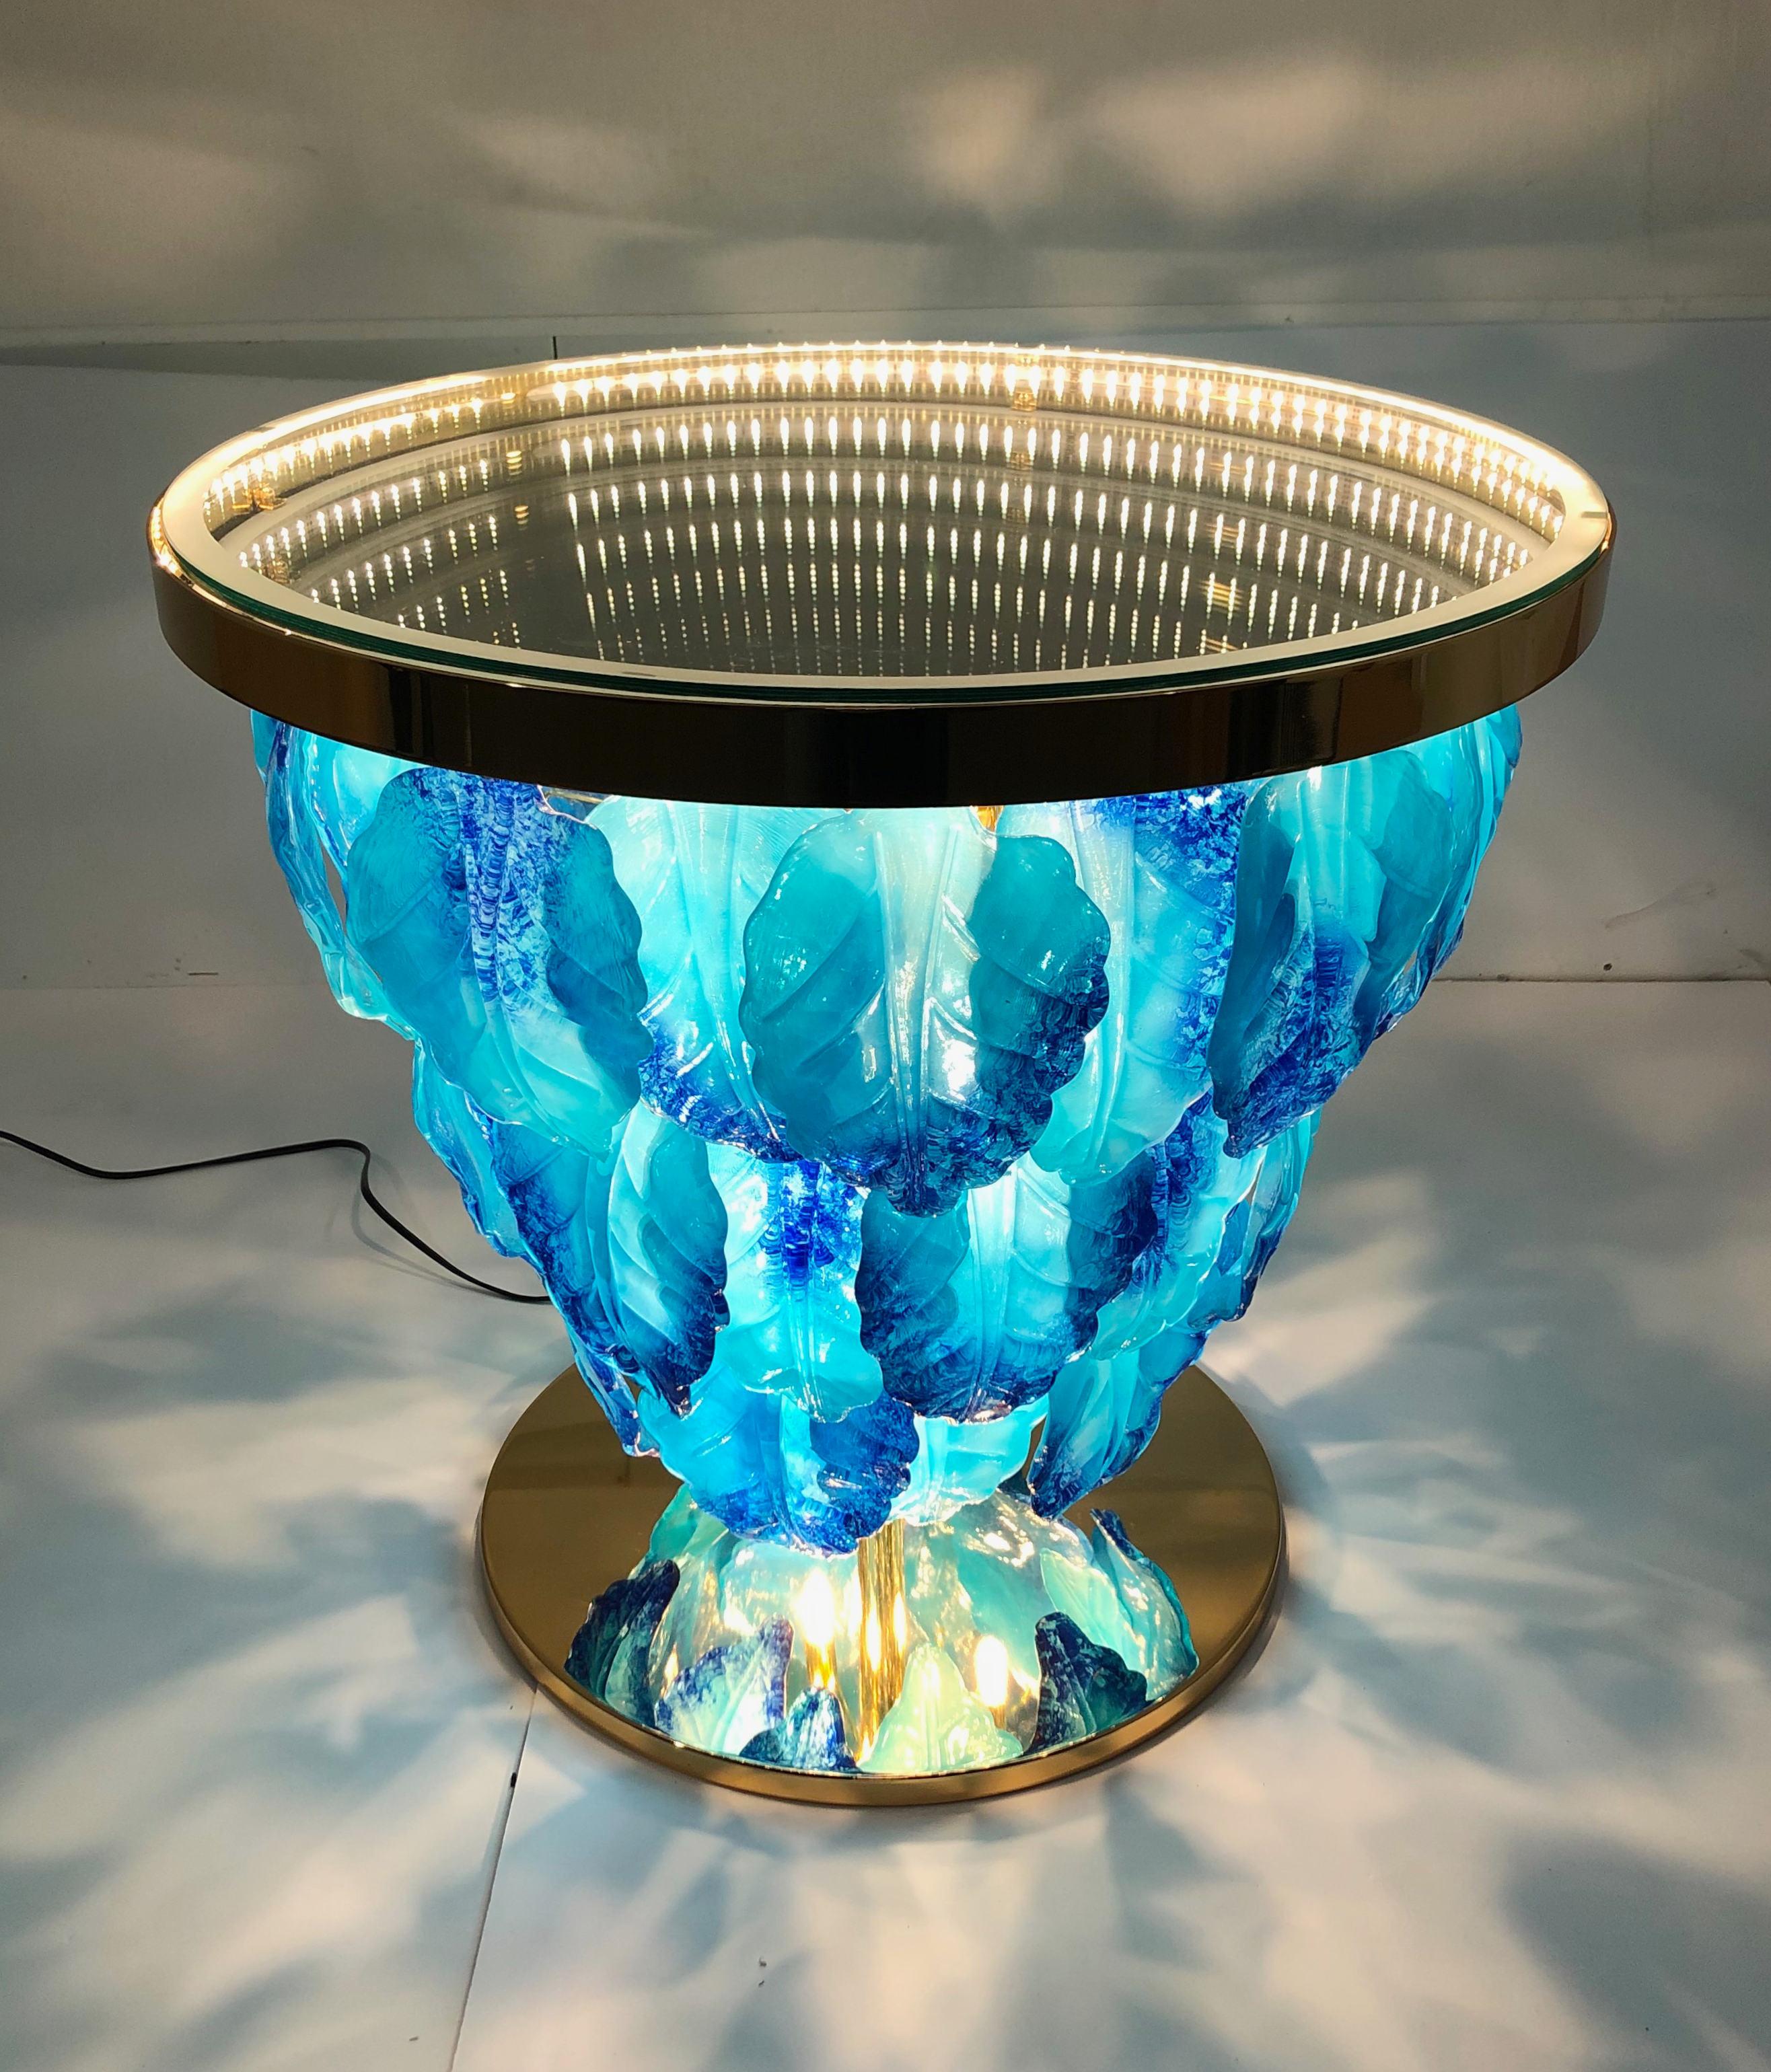 Moderner italienischer Leuchttisch mit unendlich beleuchtetem Spiegel, verziert mit blauen und aquamarinfarbenen Muranoglasblättern, montiert auf einem 24 Karat vergoldeten Metallsockel / Entworfen von Fabio Bergomi für Fabio Ltd / Made in